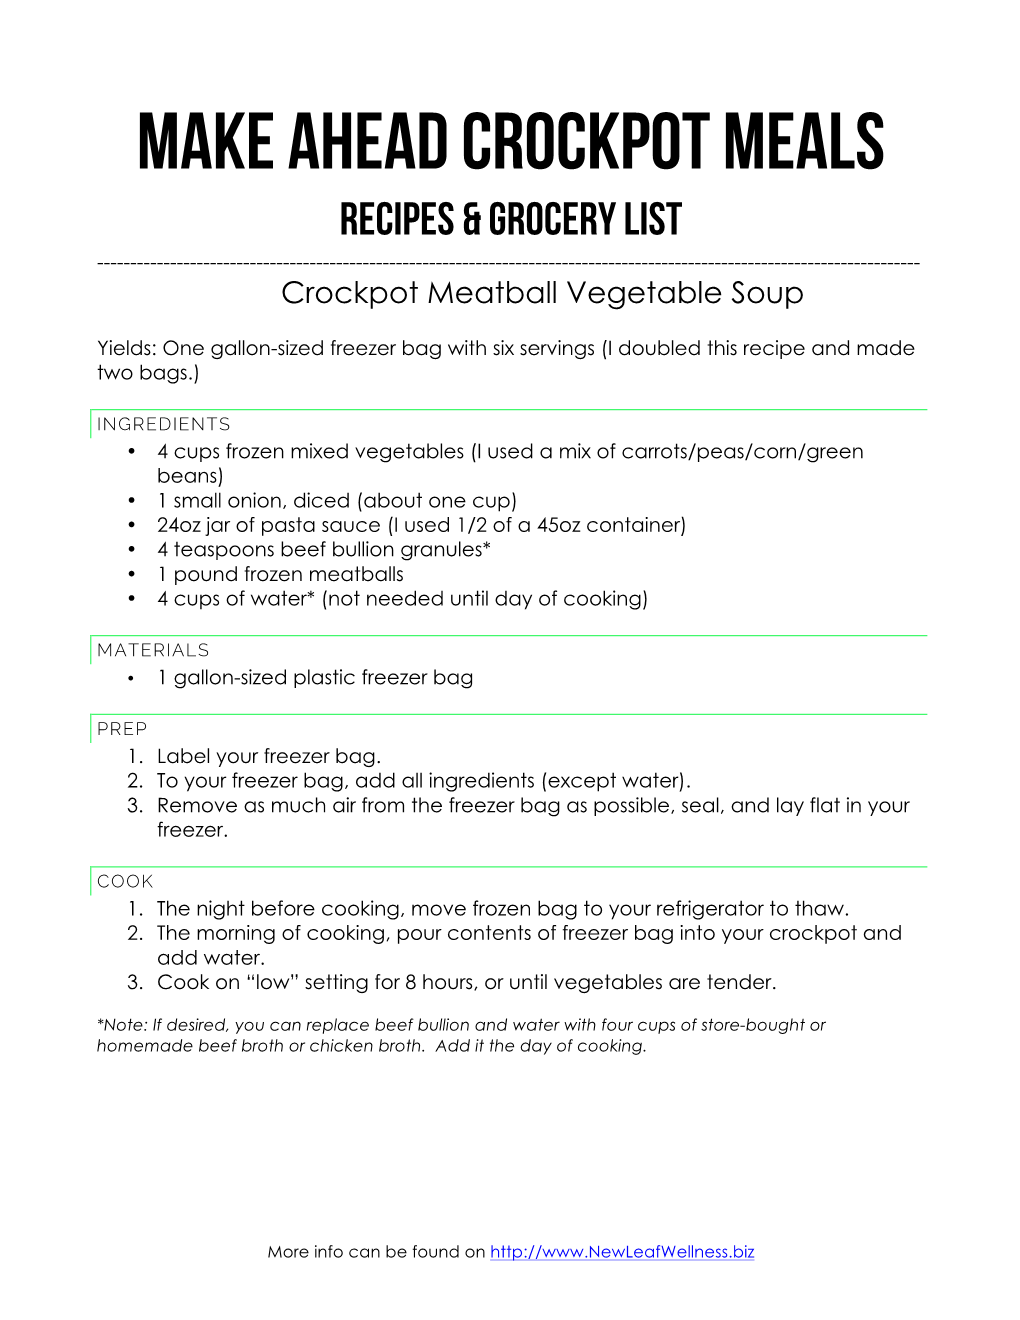 MAKE AHEAD CROCKPOT MEALS Recipes & Grocery List ------Crockpot Meatball Vegetable Soup